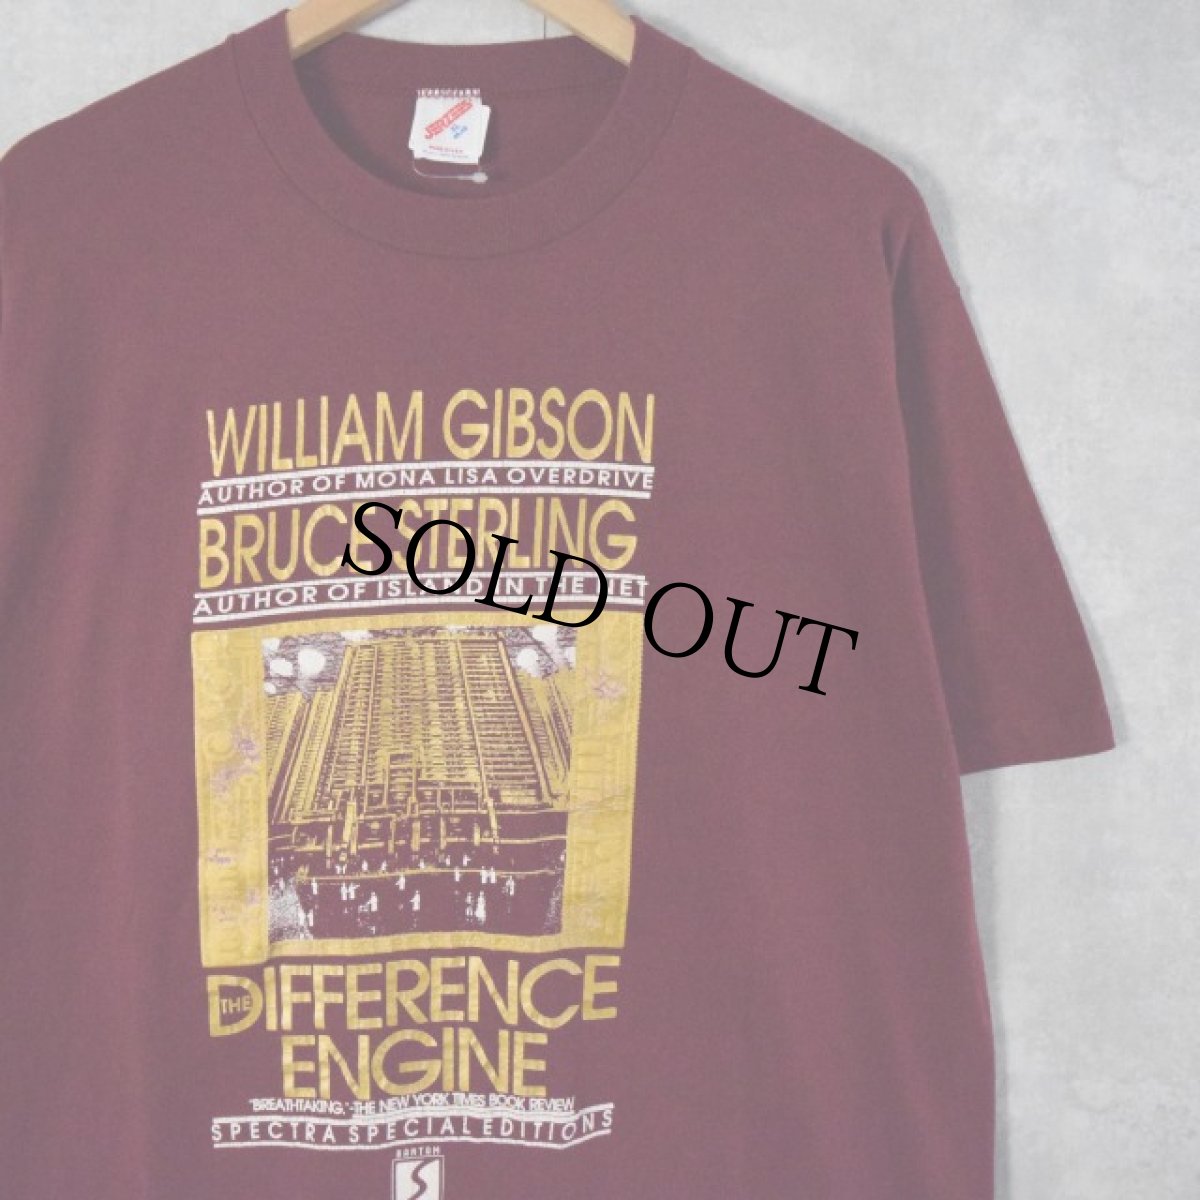 画像1: 80's William Ford Gibson "BRUCE STERLING" USA製 小説Tシャツ XL (1)